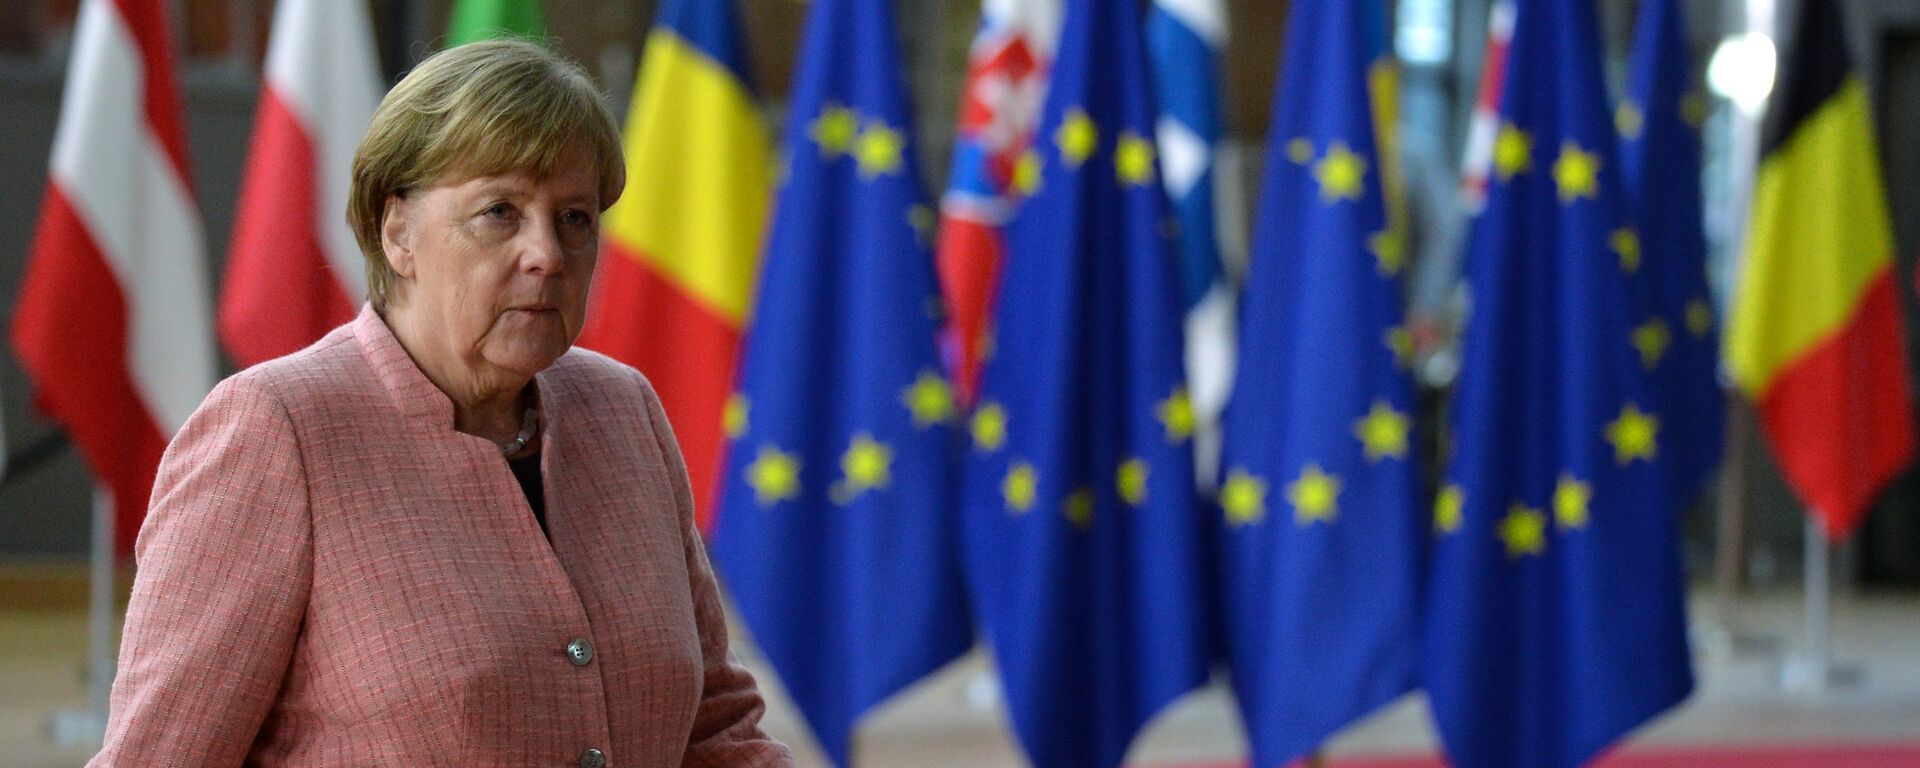 Канцлер Германии Ангела Меркель на саммите ЕС (23 марта 2018). Брюссель - Sputnik Армения, 1920, 19.11.2021